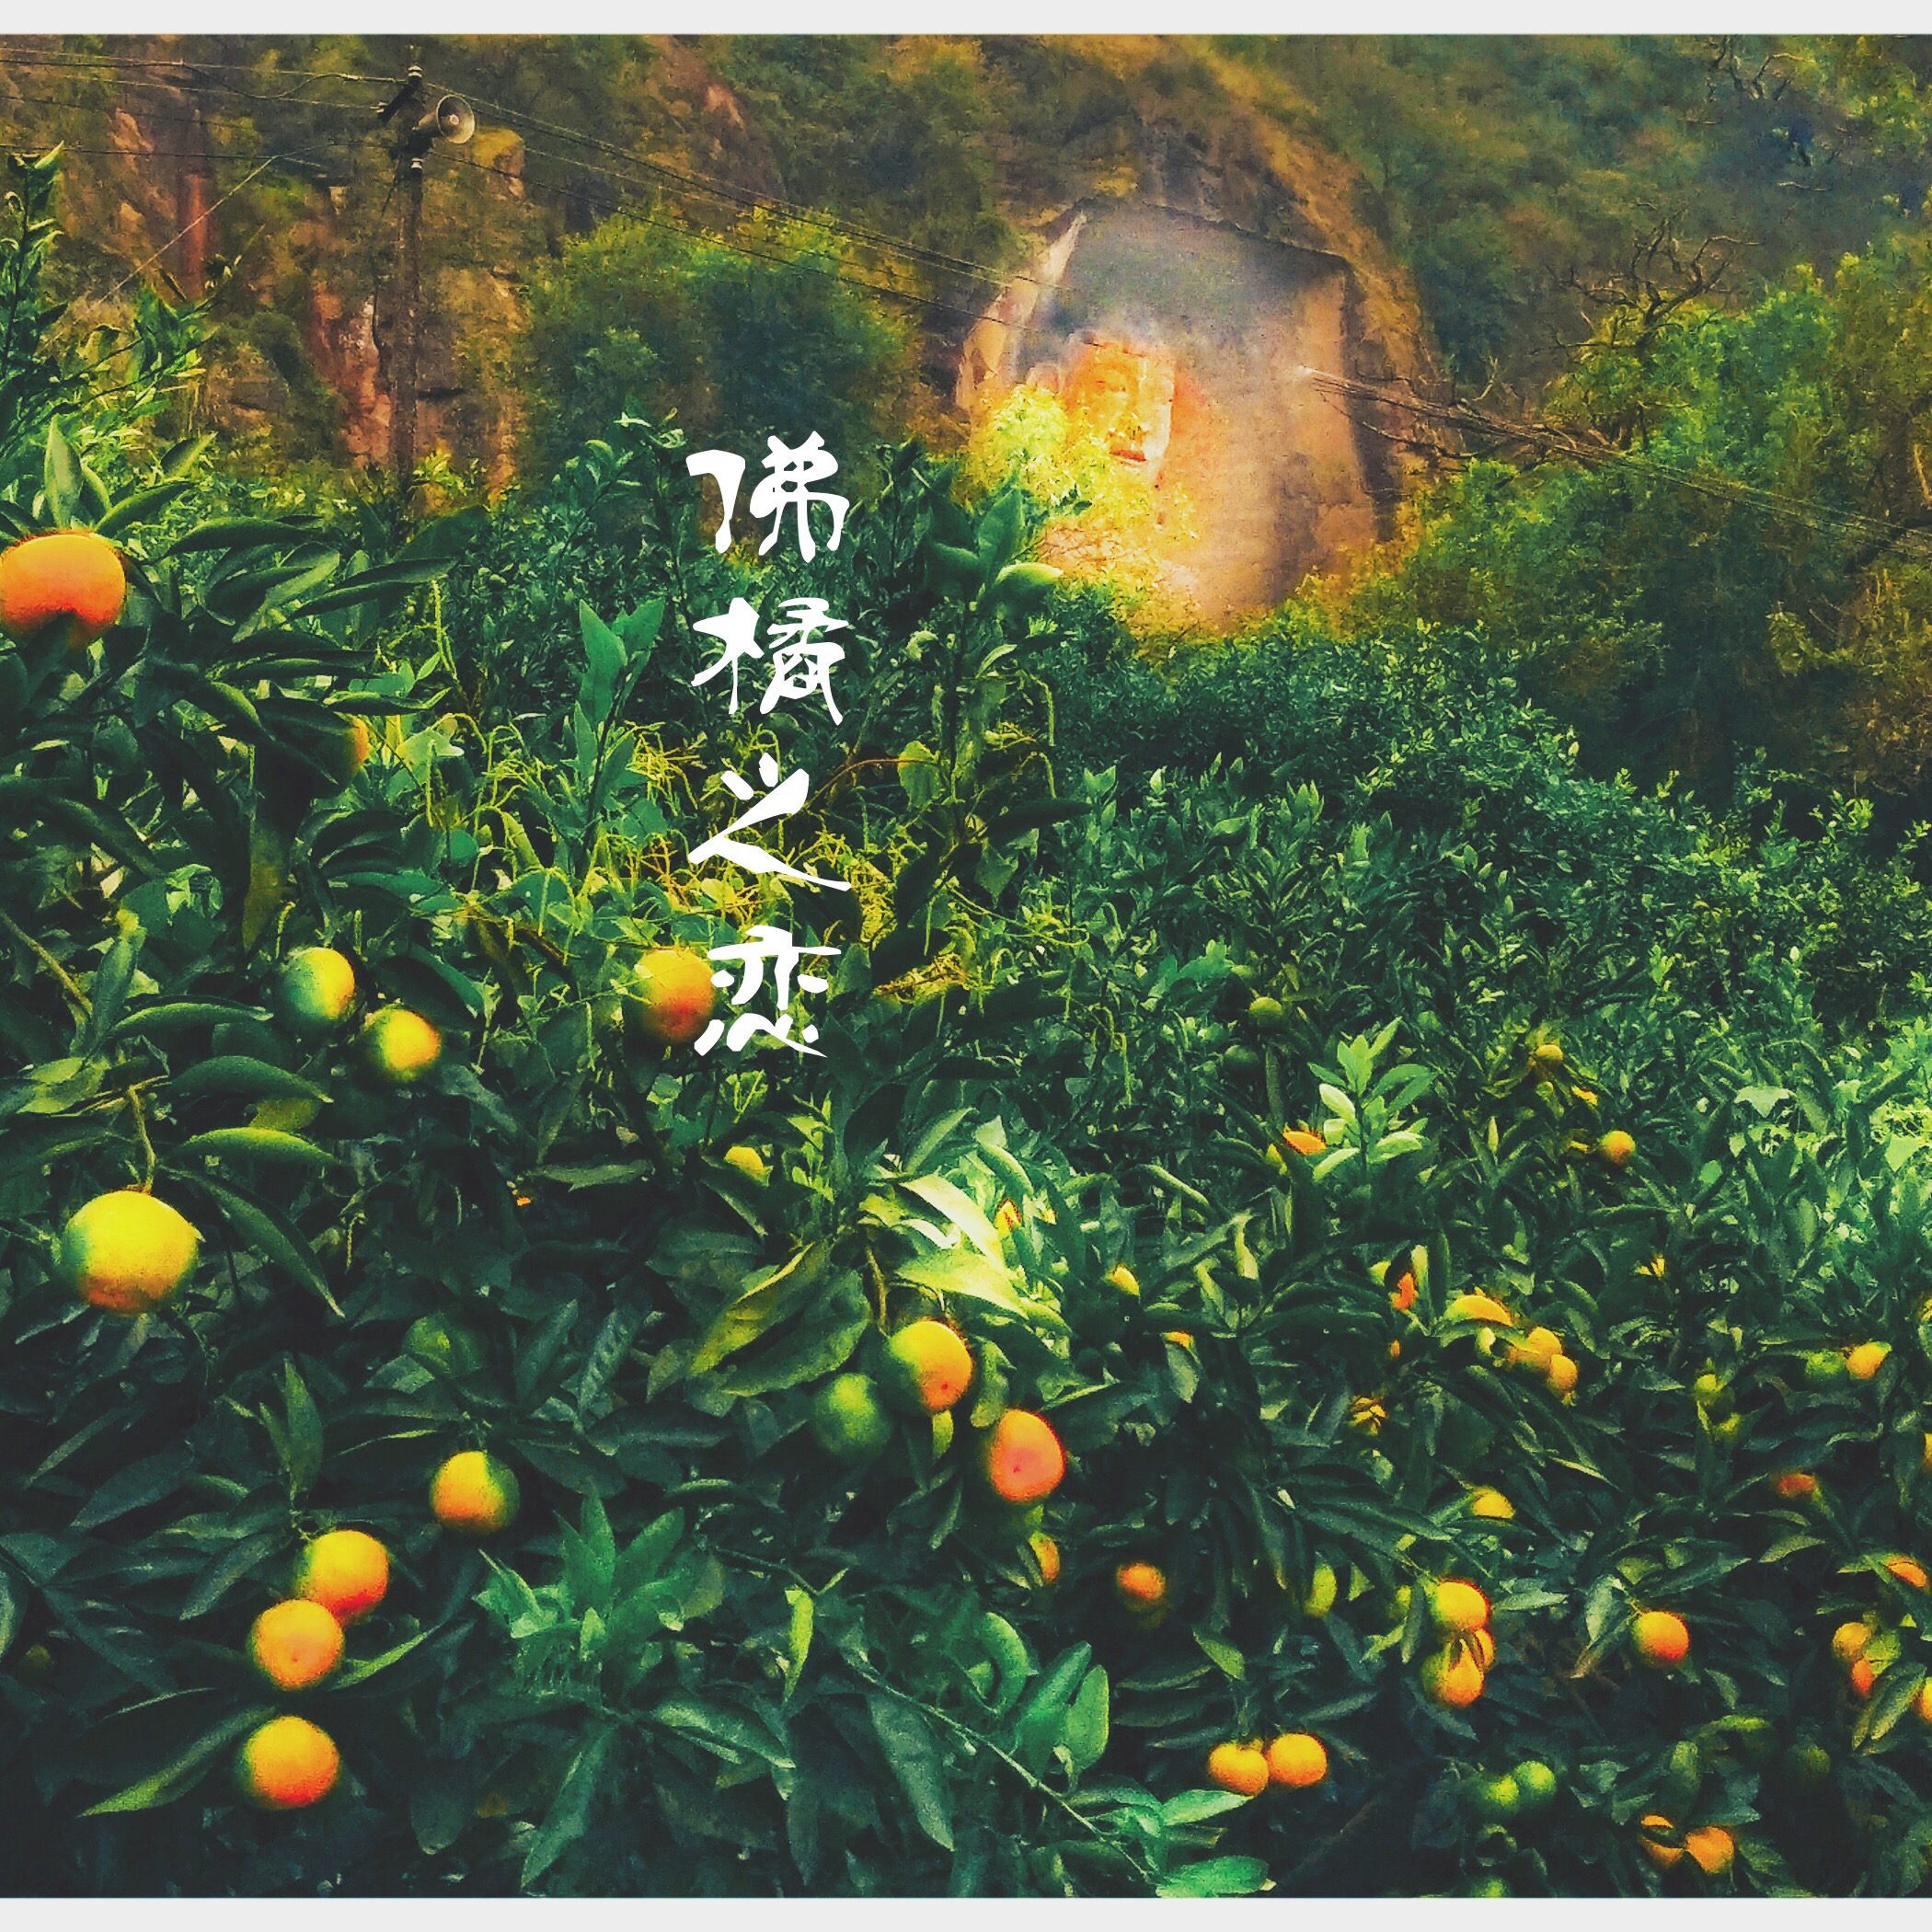 佛橘之戀（佛山橘海風景區主題歌） 專輯封面